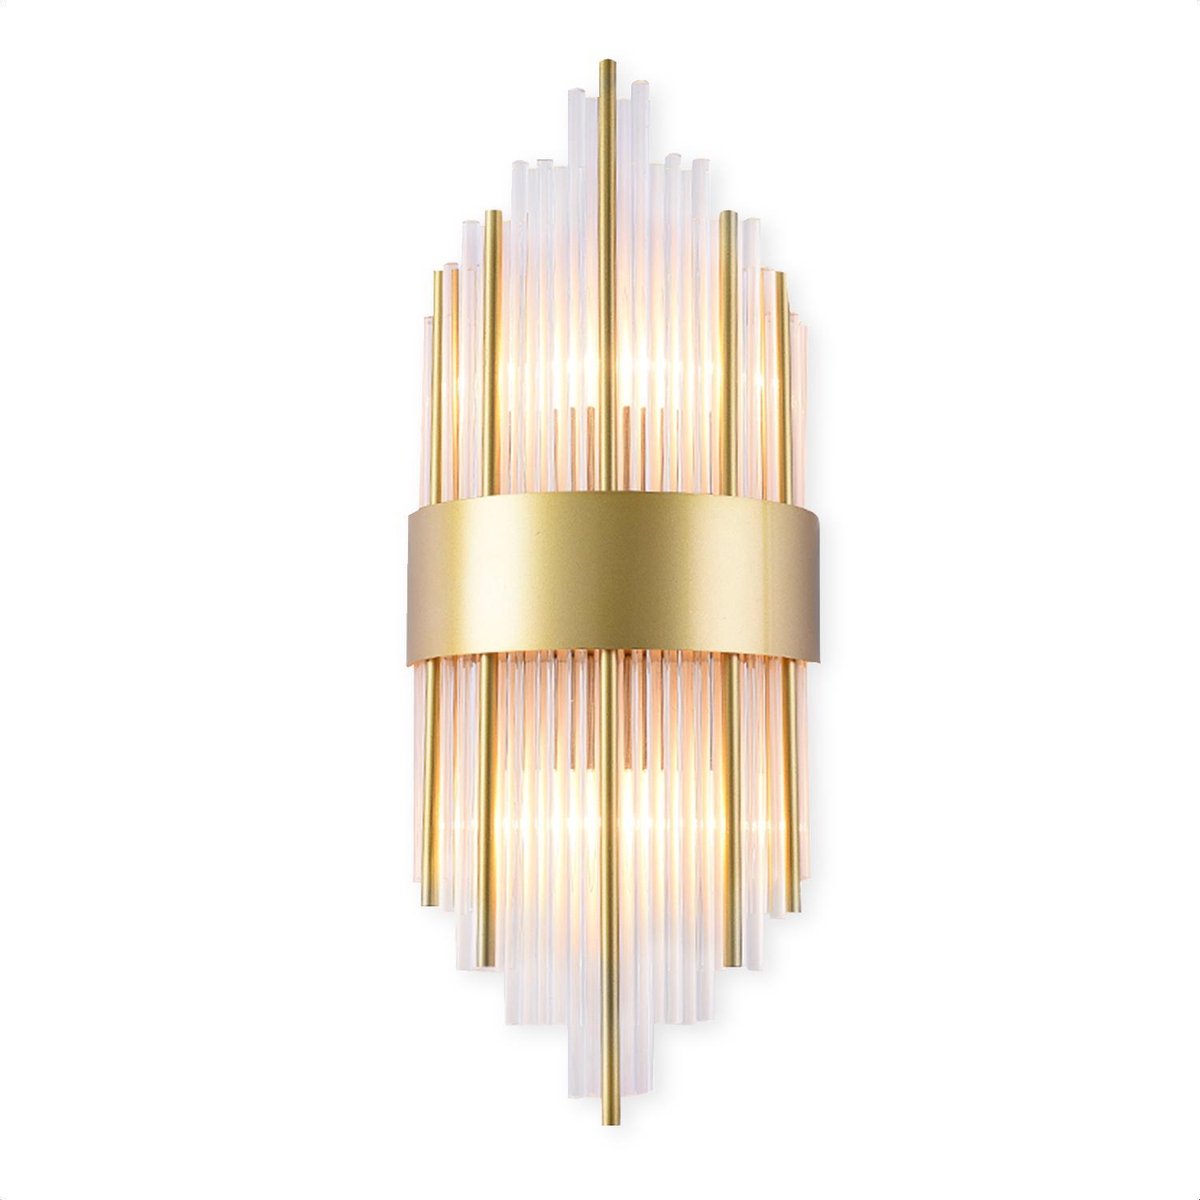 Wandlamp - Kristallen Binnen Wandlamp Goud - Decoratie voor Binnenhuis - 20x60cm - KL-006